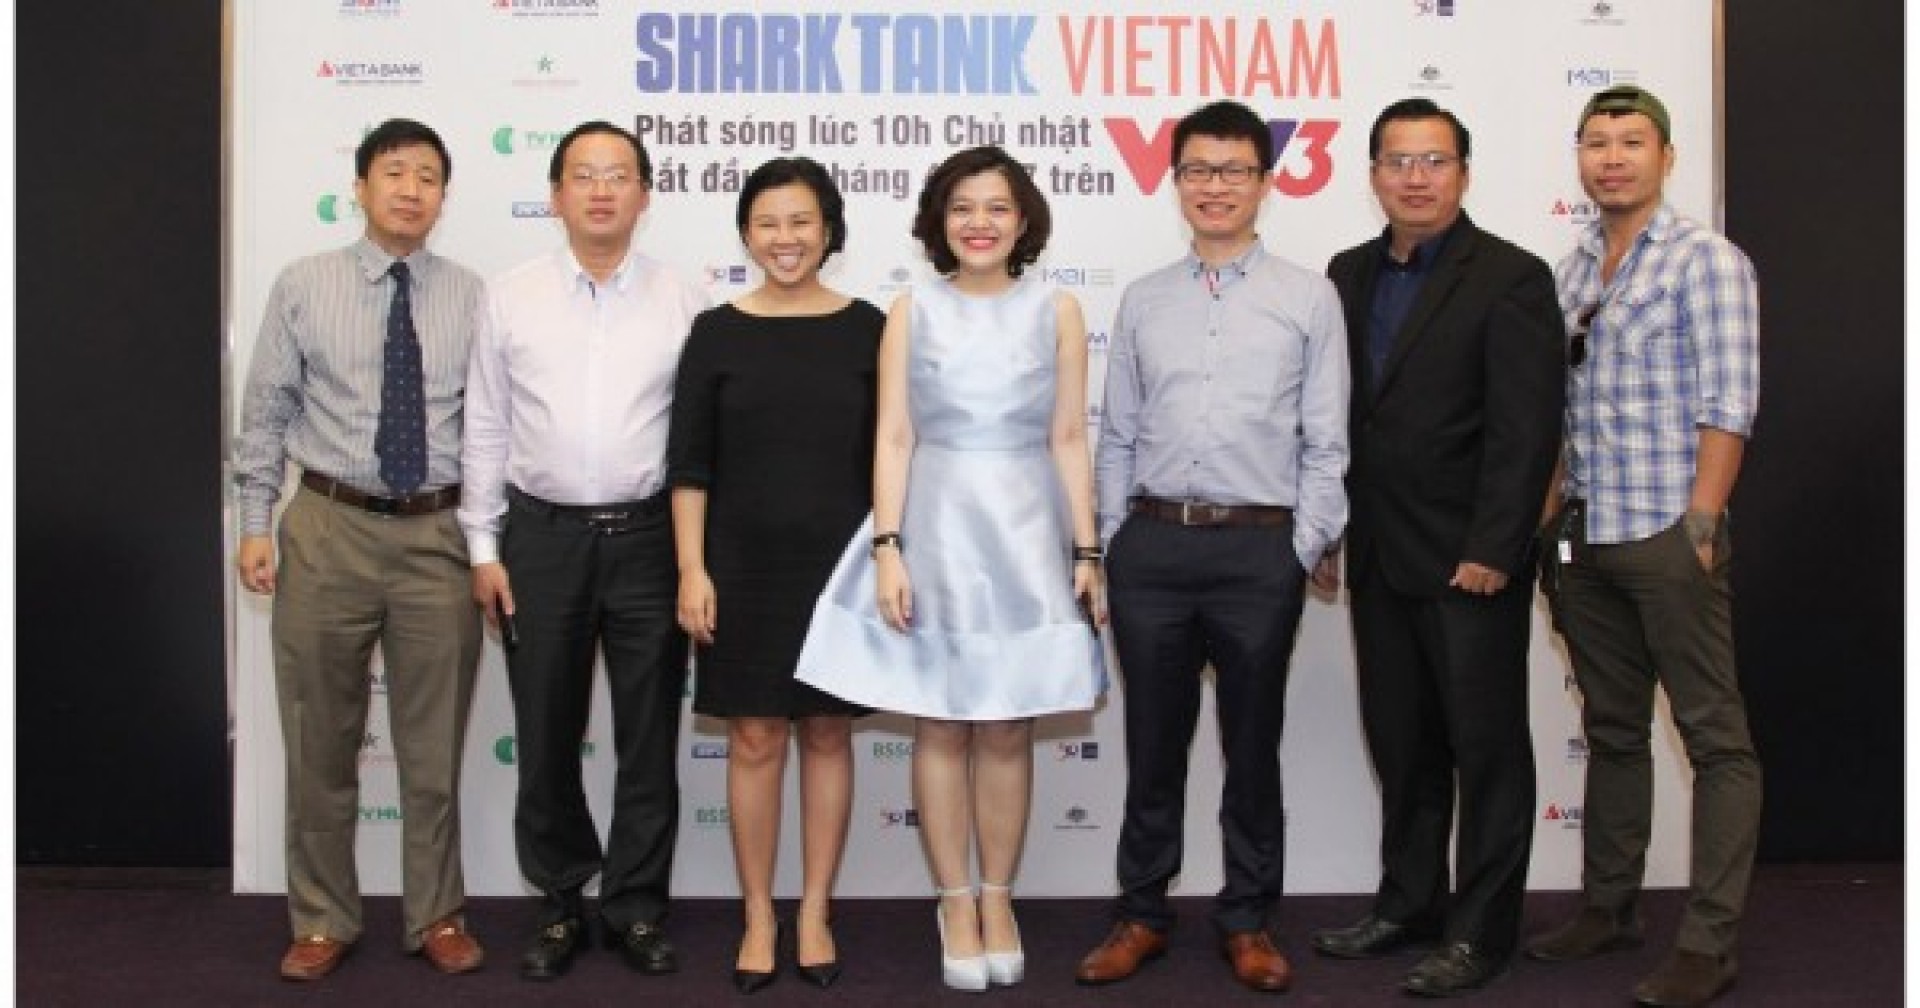 Những thương vụ gây chú ý trong chương trình Shark Tank Việt Nam